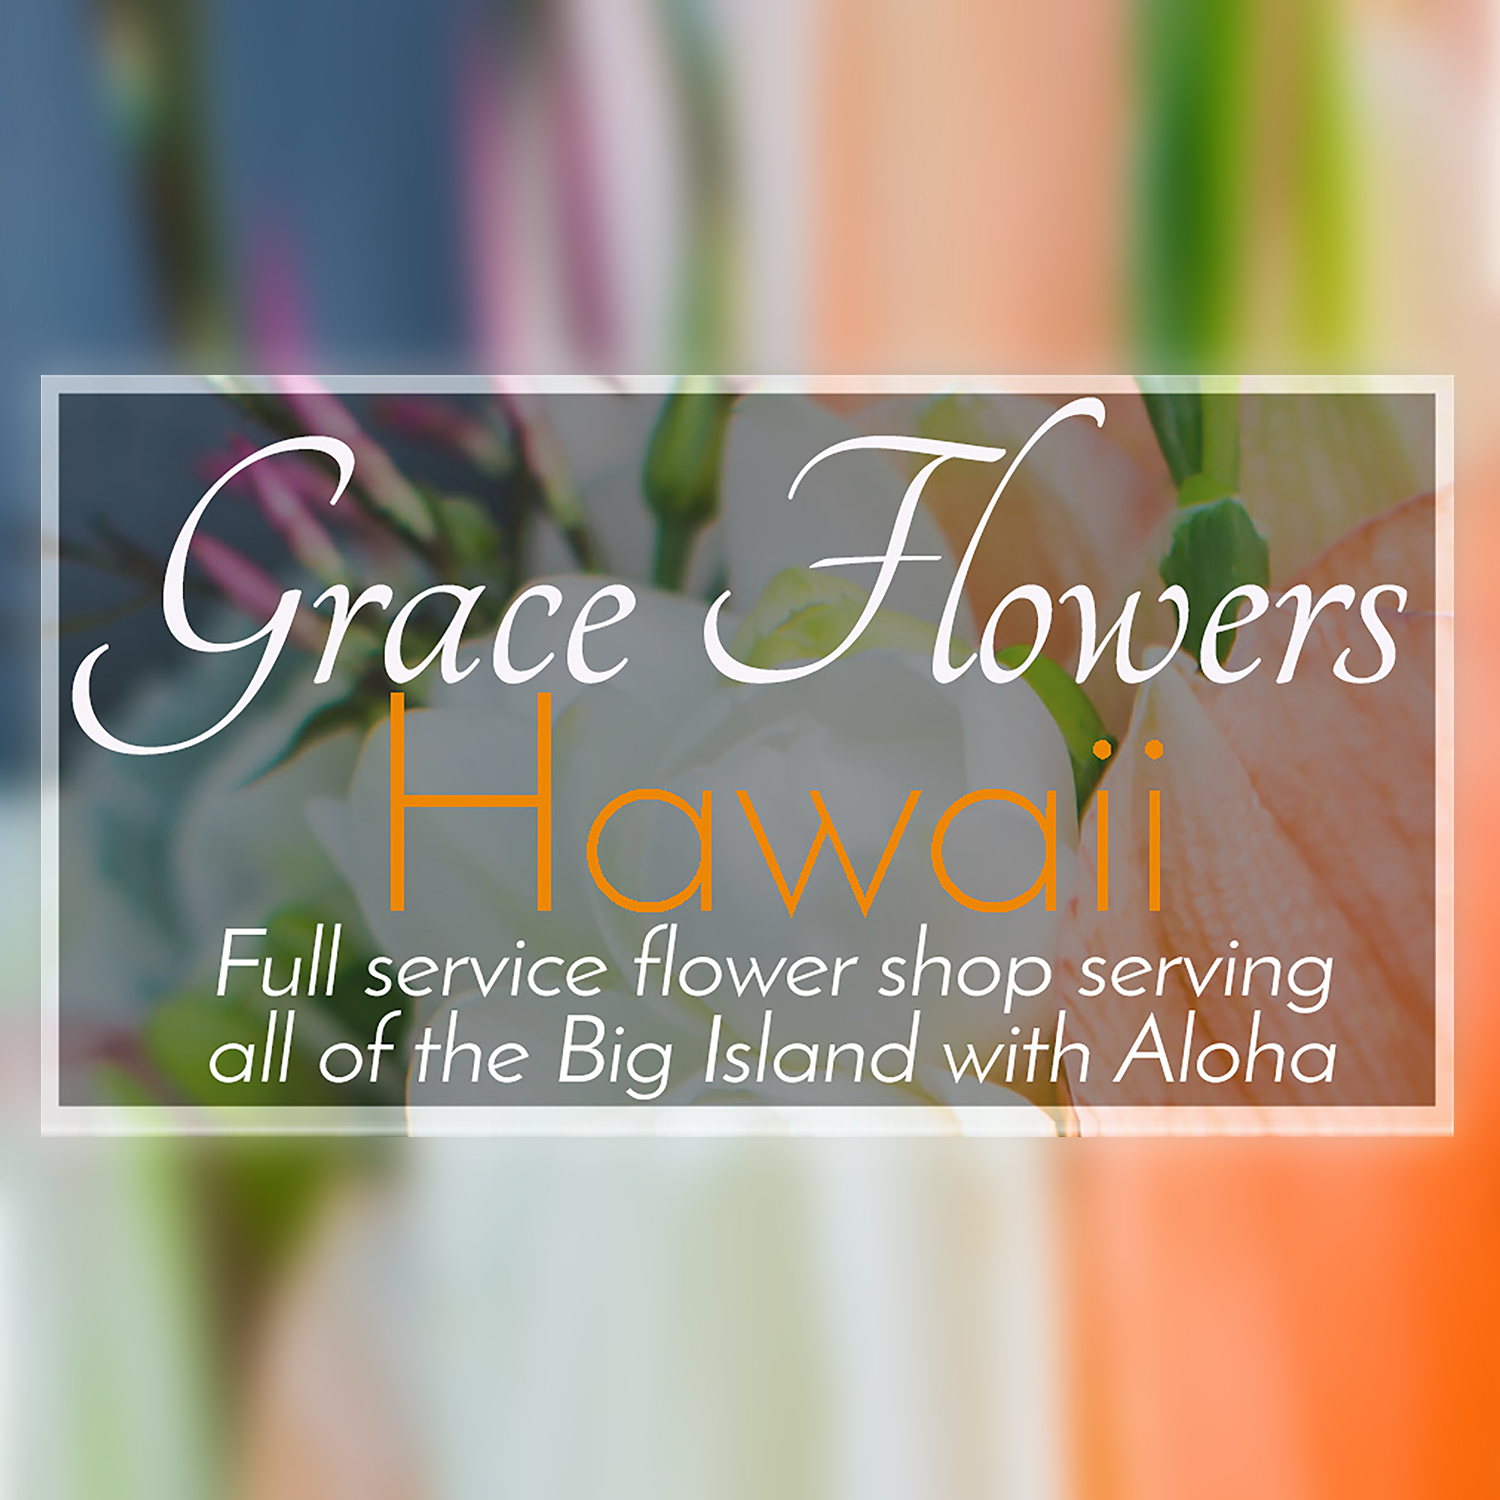 Grace Flowers Hawaii